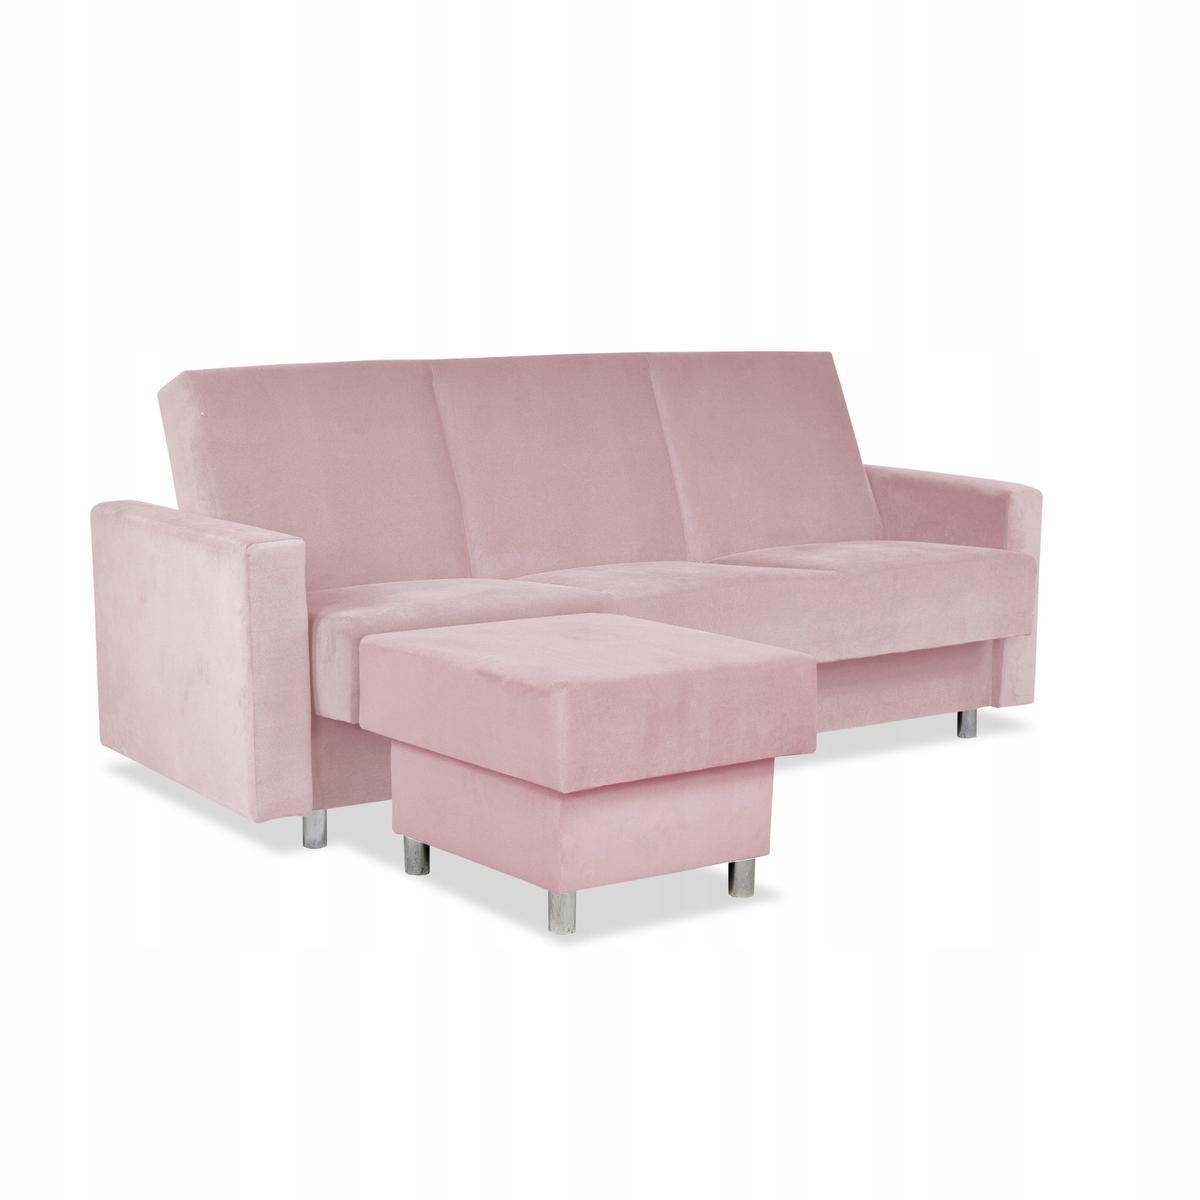 Wersalka Narożnik Alicja z pufą sofa kanapa rozkładana Family Meble różowa nr. 1